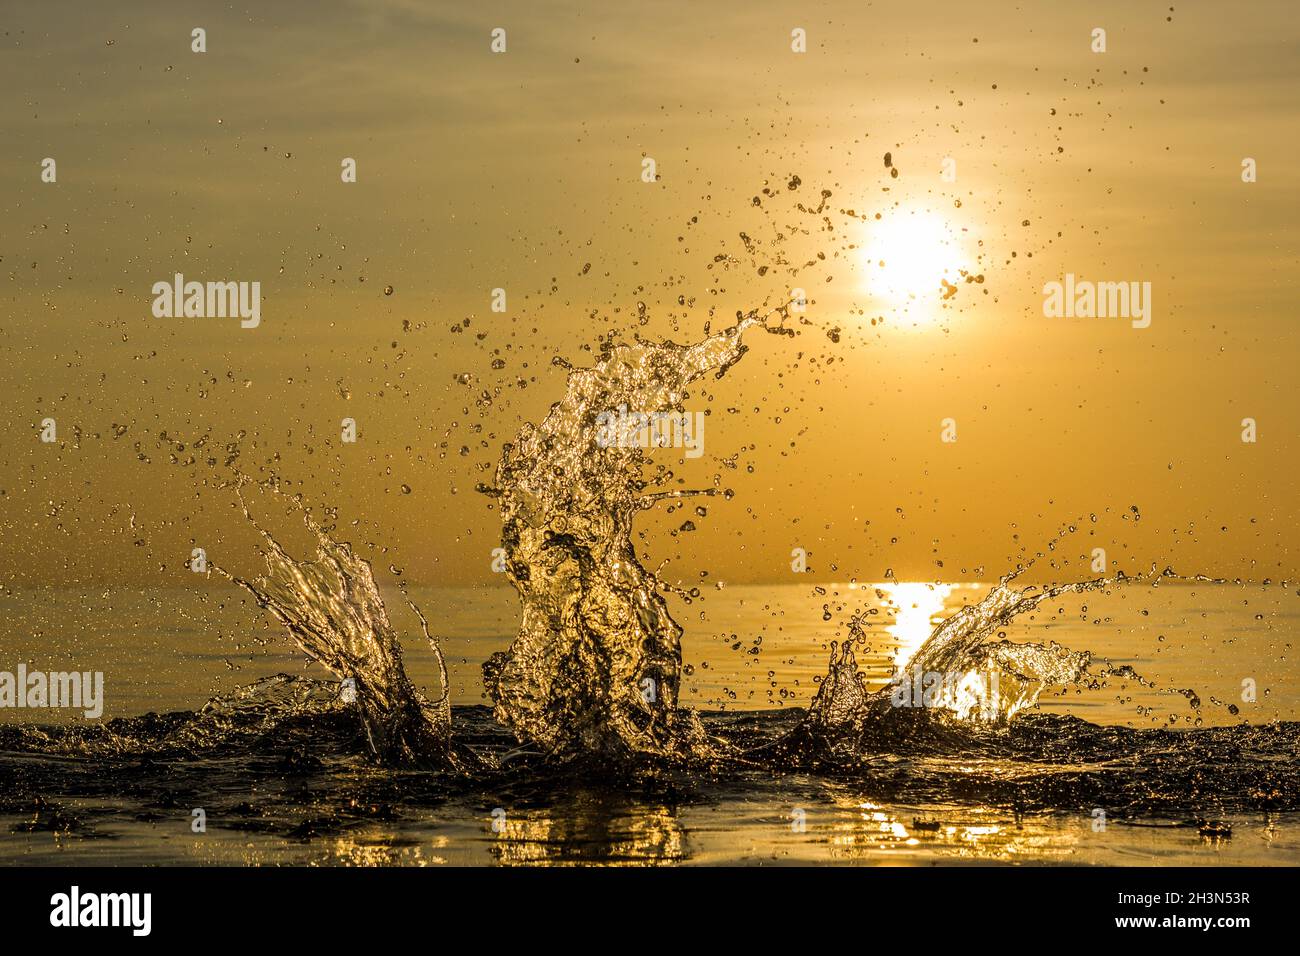 Gelate il movimento di spruzzi d'acqua al tranquillo tramonto sulla spiaggia nell'isola di Koh Phangan, Thailandia. Concetto di effetto fresco e fresco Foto Stock